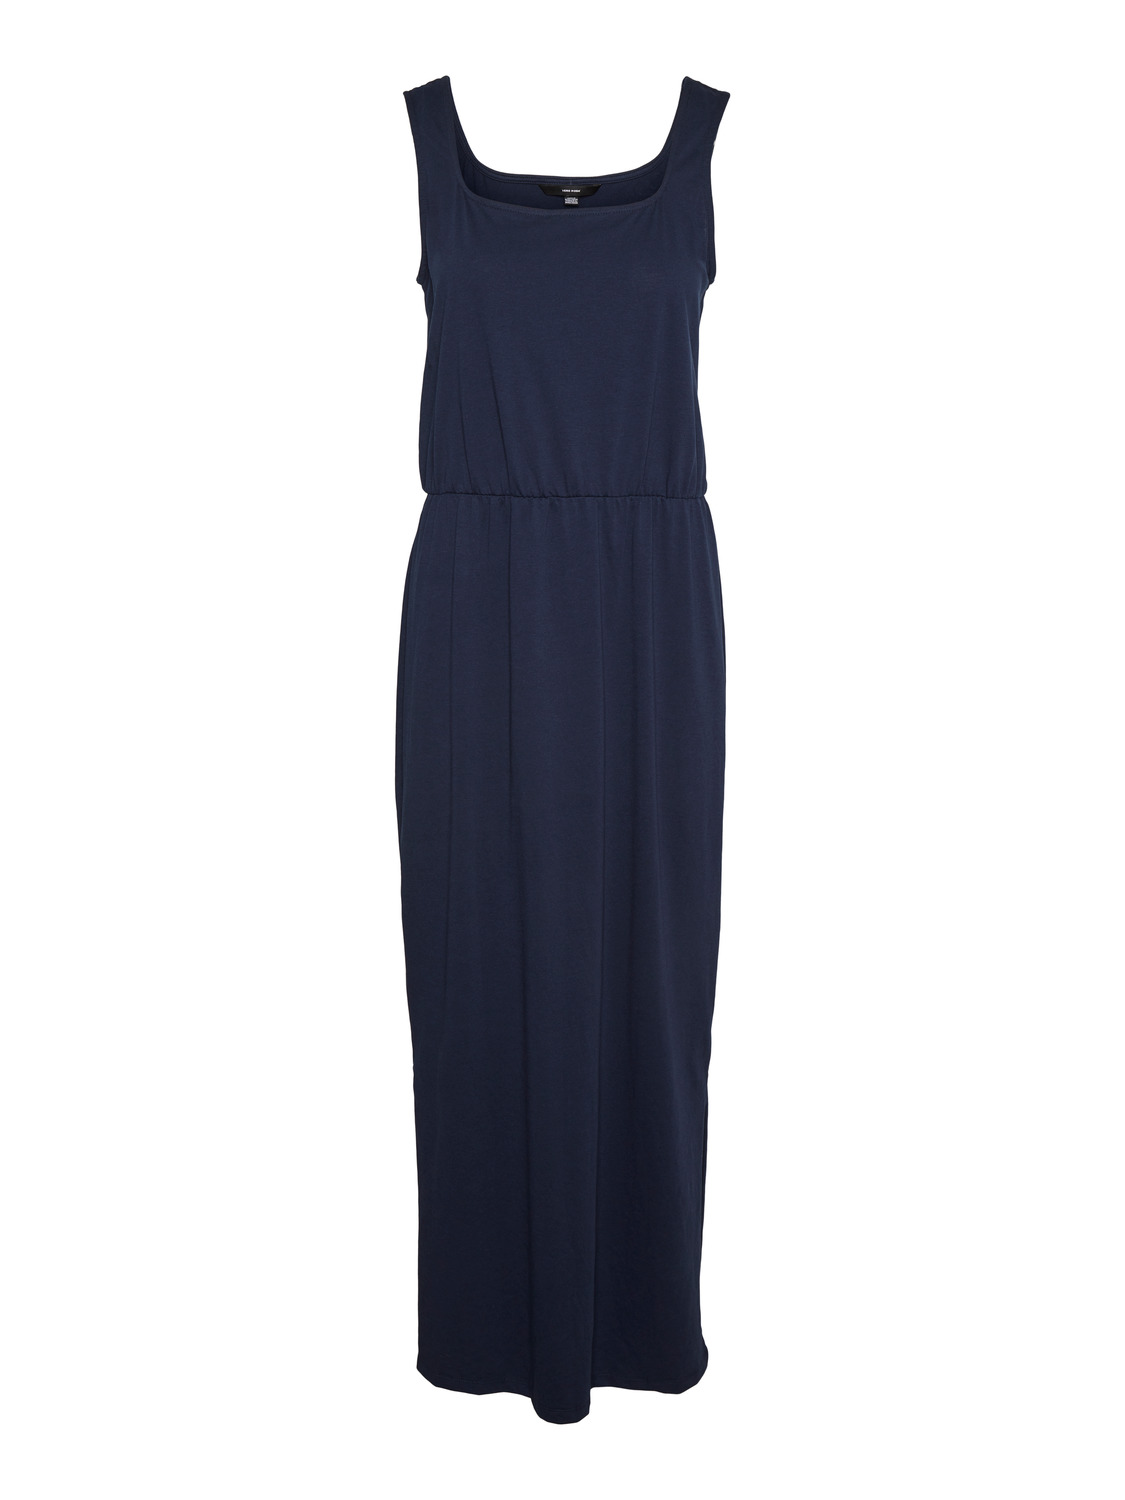 Bardziej zrównoważony keBO9 Vero Moda Tall Letnia sukienka REBECCA w kolorze Granatowym 